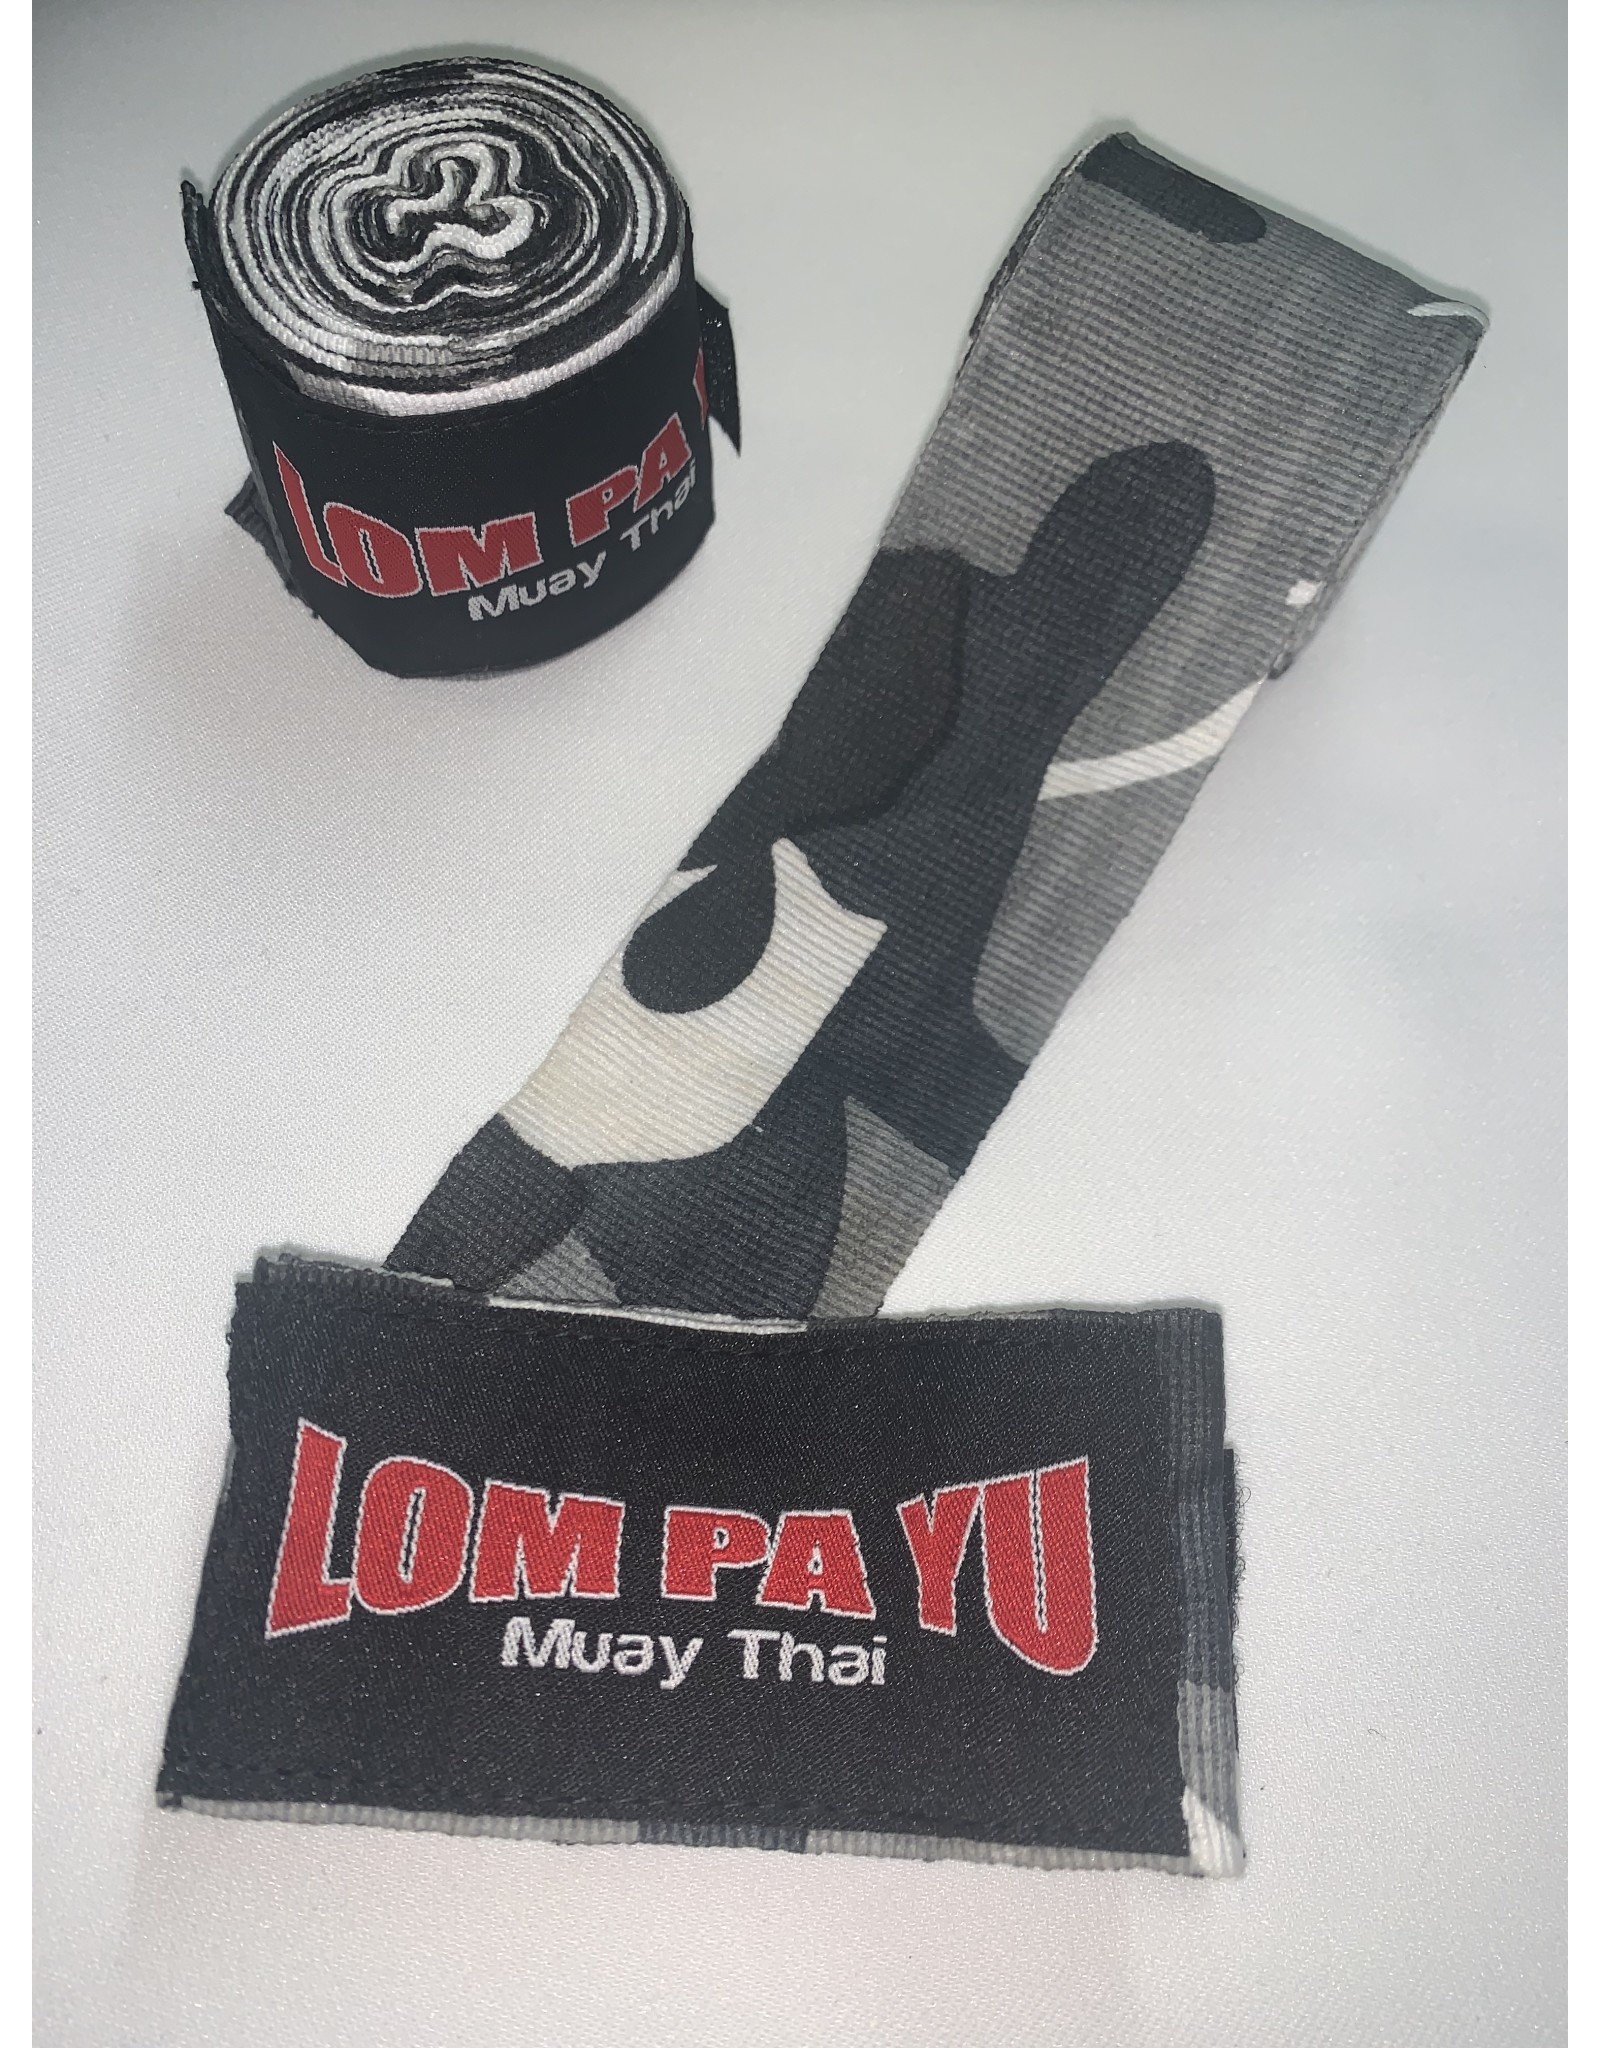 Lom Pa Yu Hand wraps Fancy - Lom Pa Yu